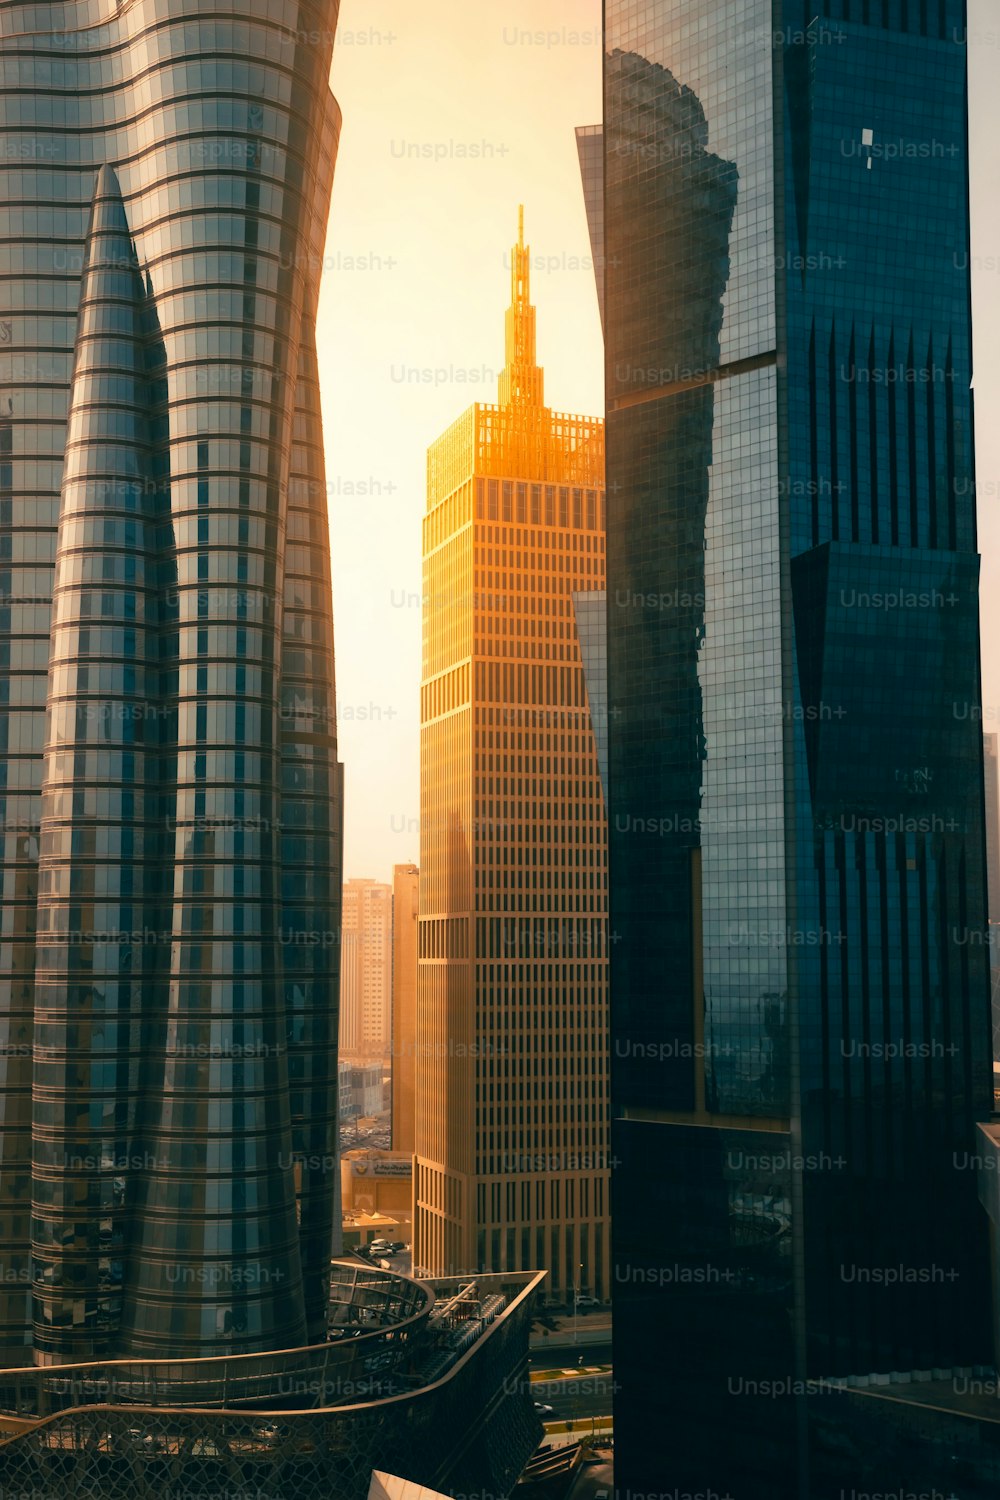 Il sole splendente su un grattacielo a Doha, in Qatar